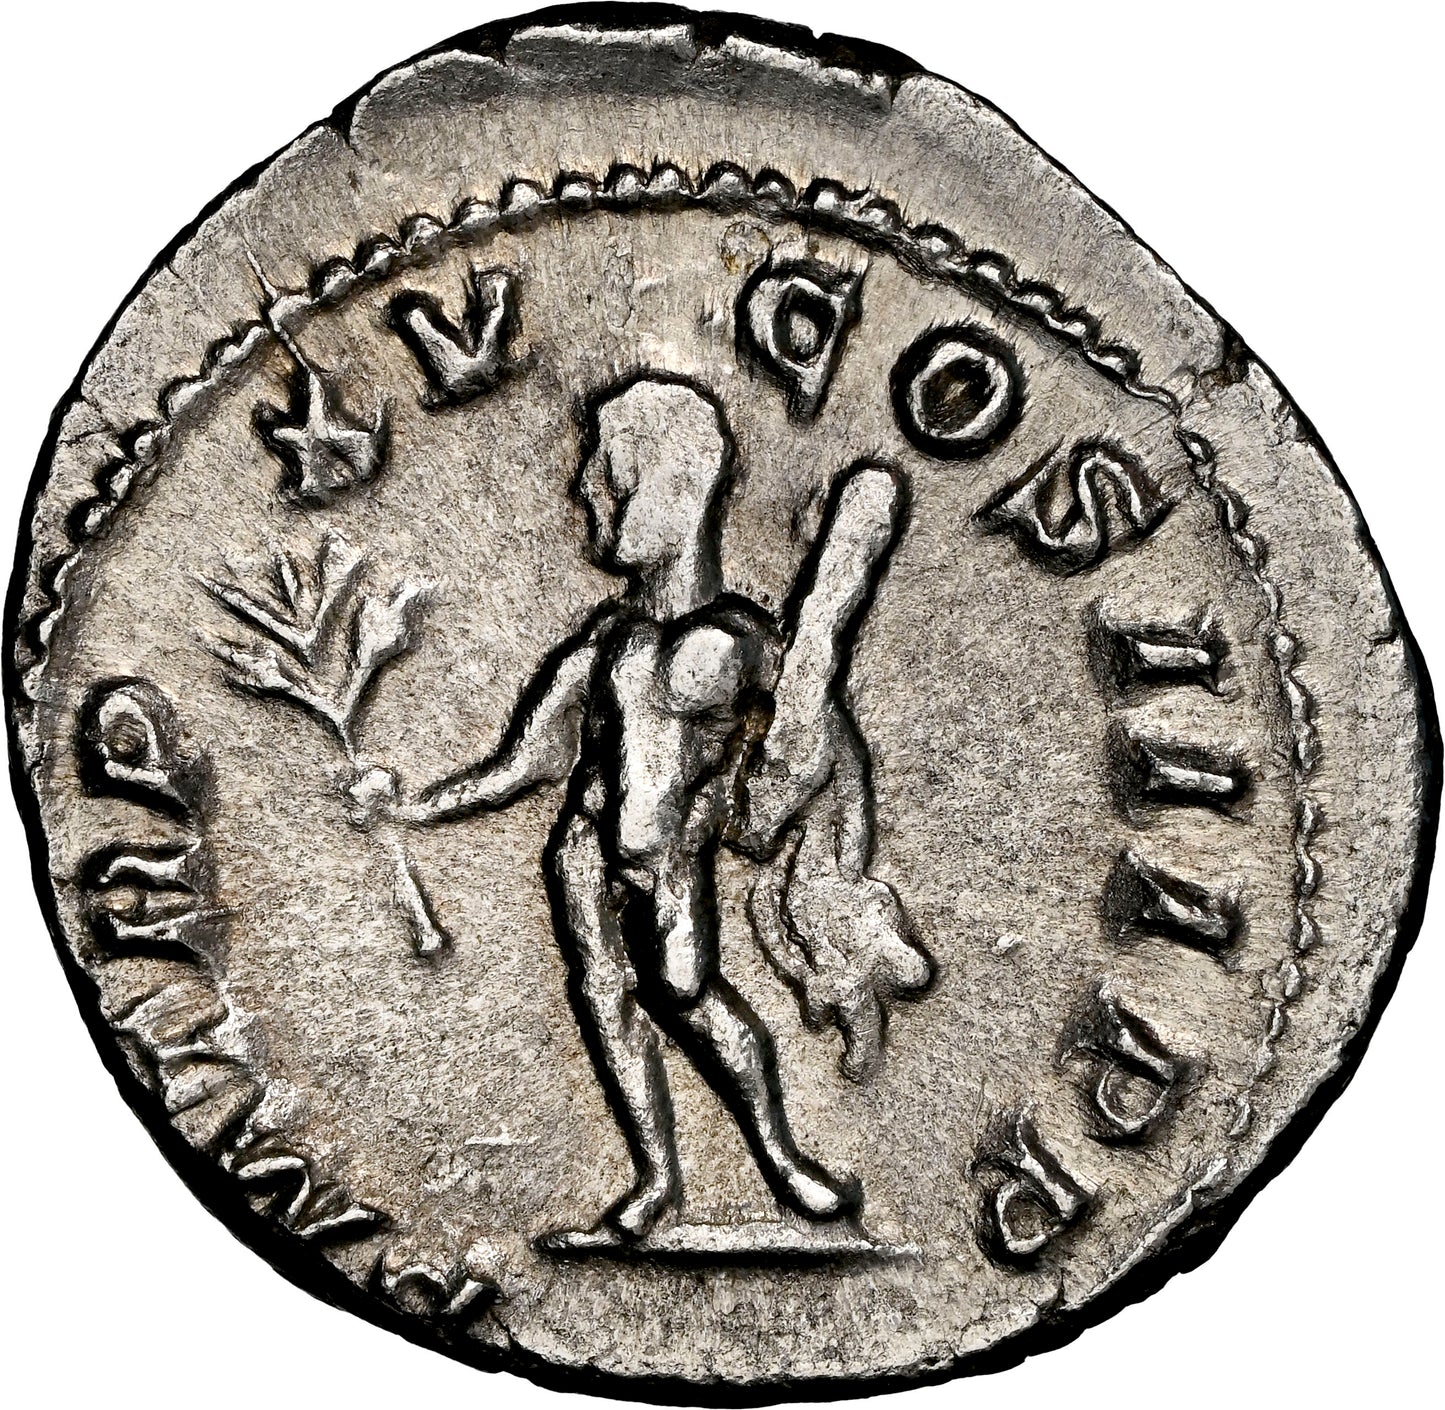 Roman Empire - Caracalla - Silver Denarius - NGC AU - RIC:192